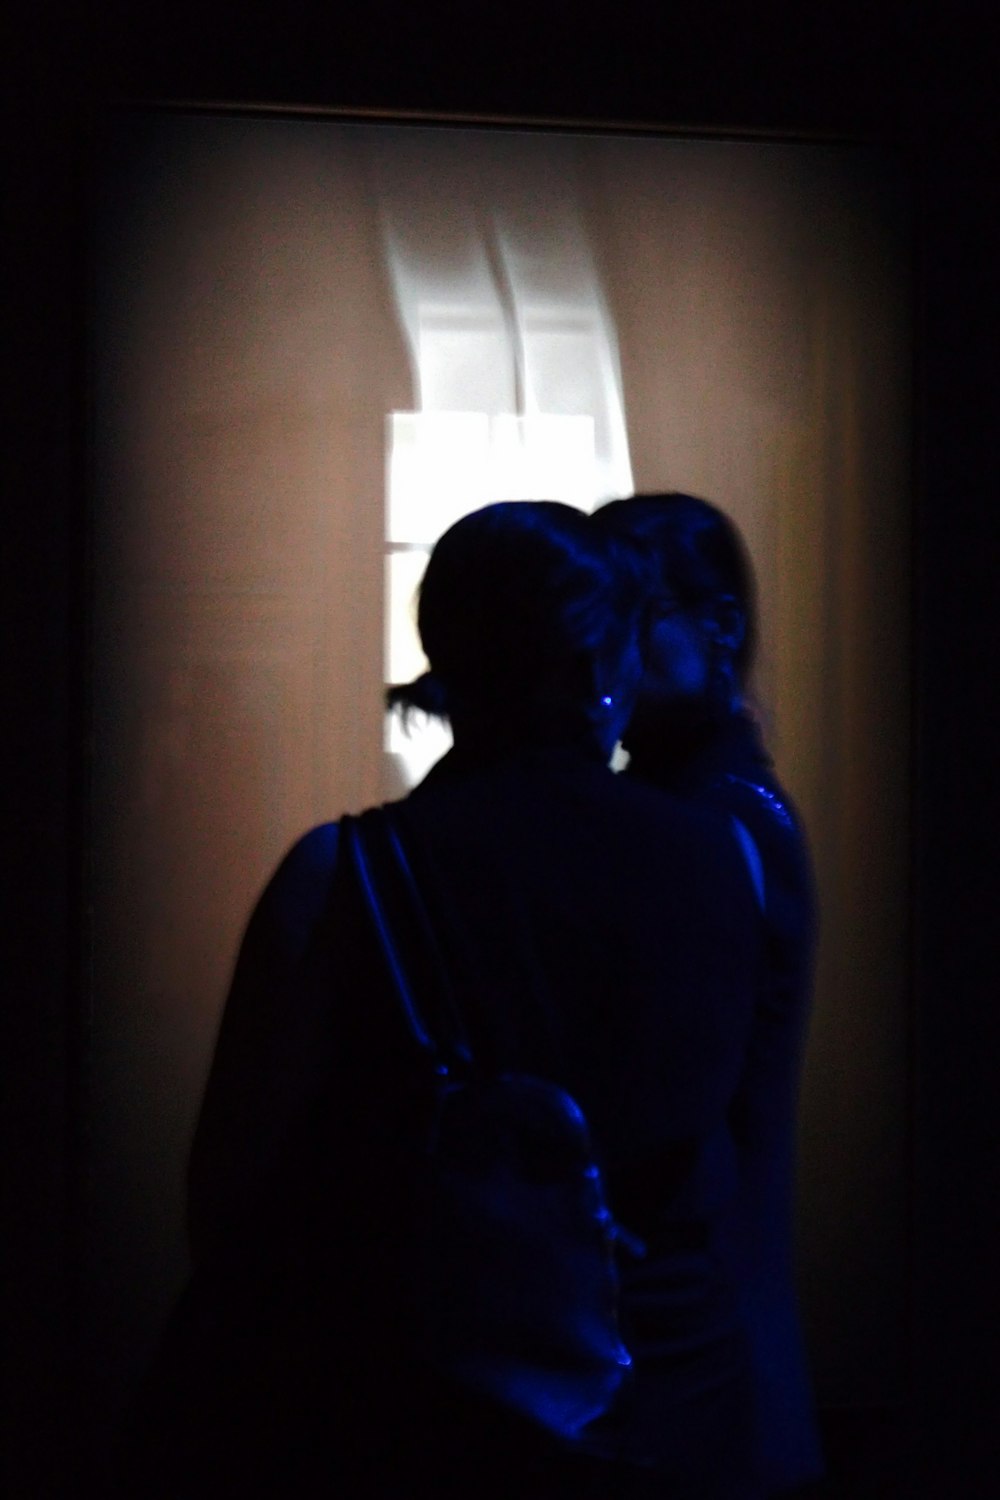 una mujer parada frente a una ventana en la oscuridad